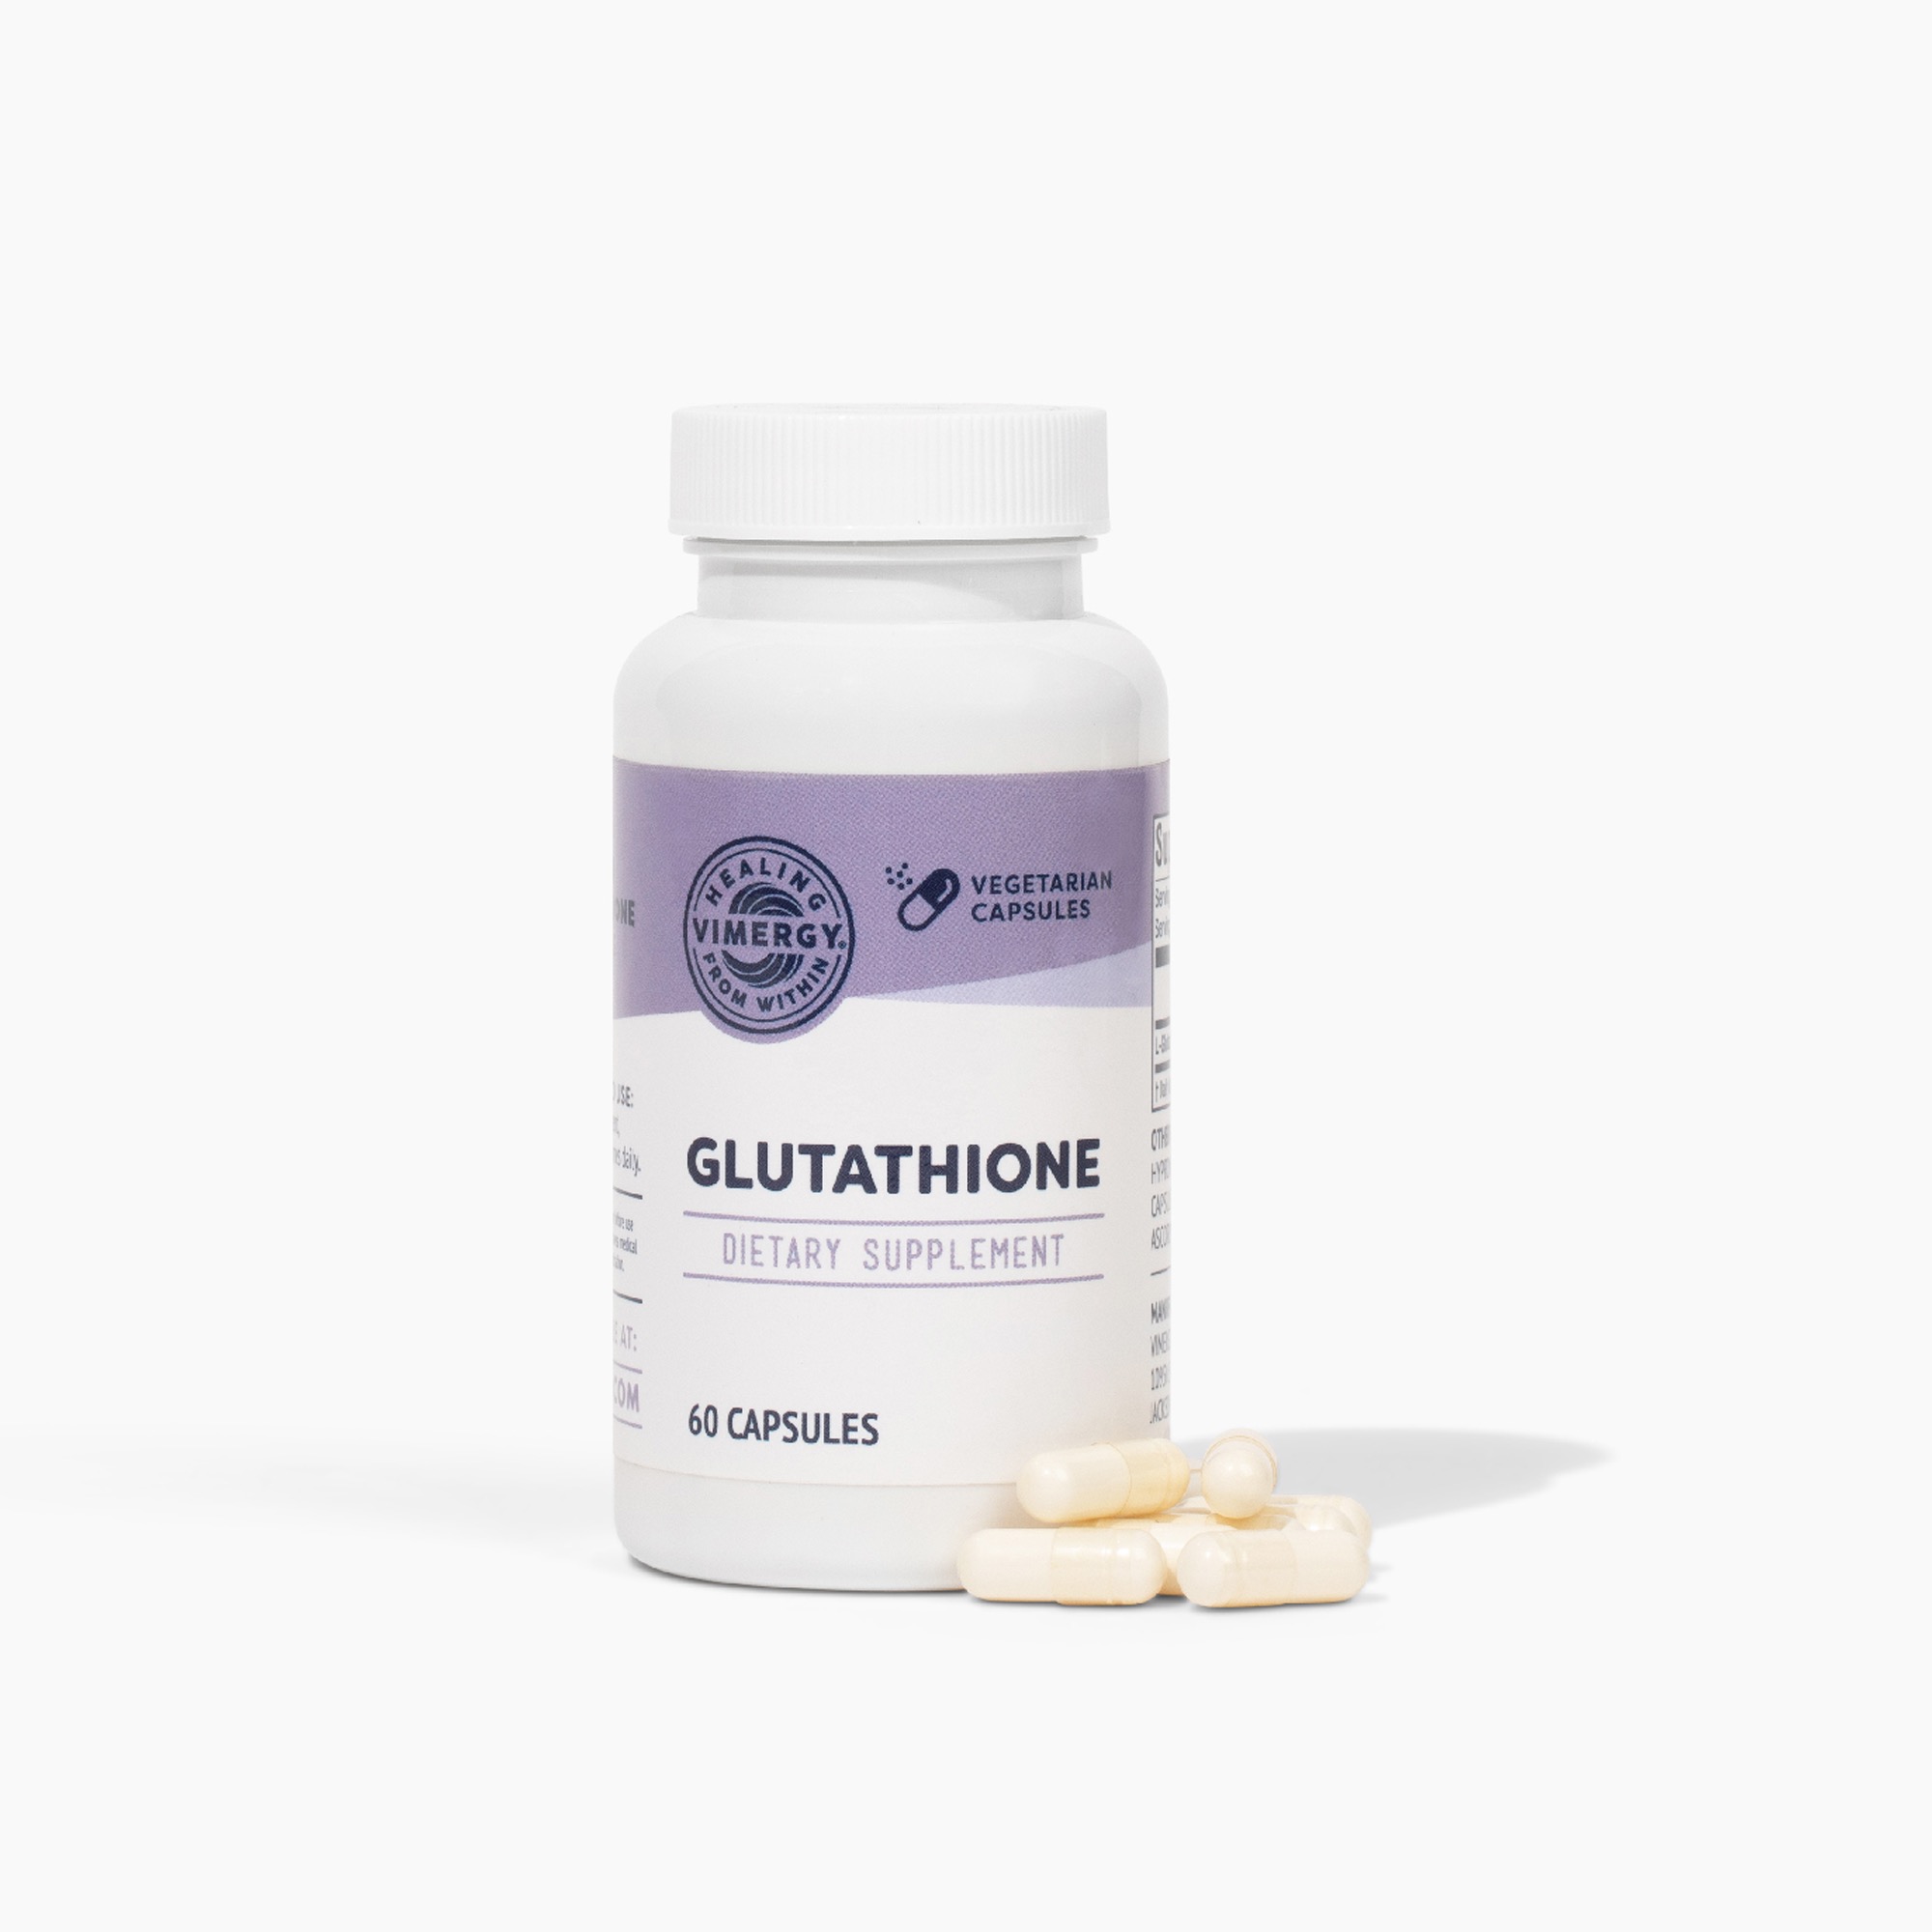 Glutathion 150 mg | Vimergy von Vimergy.